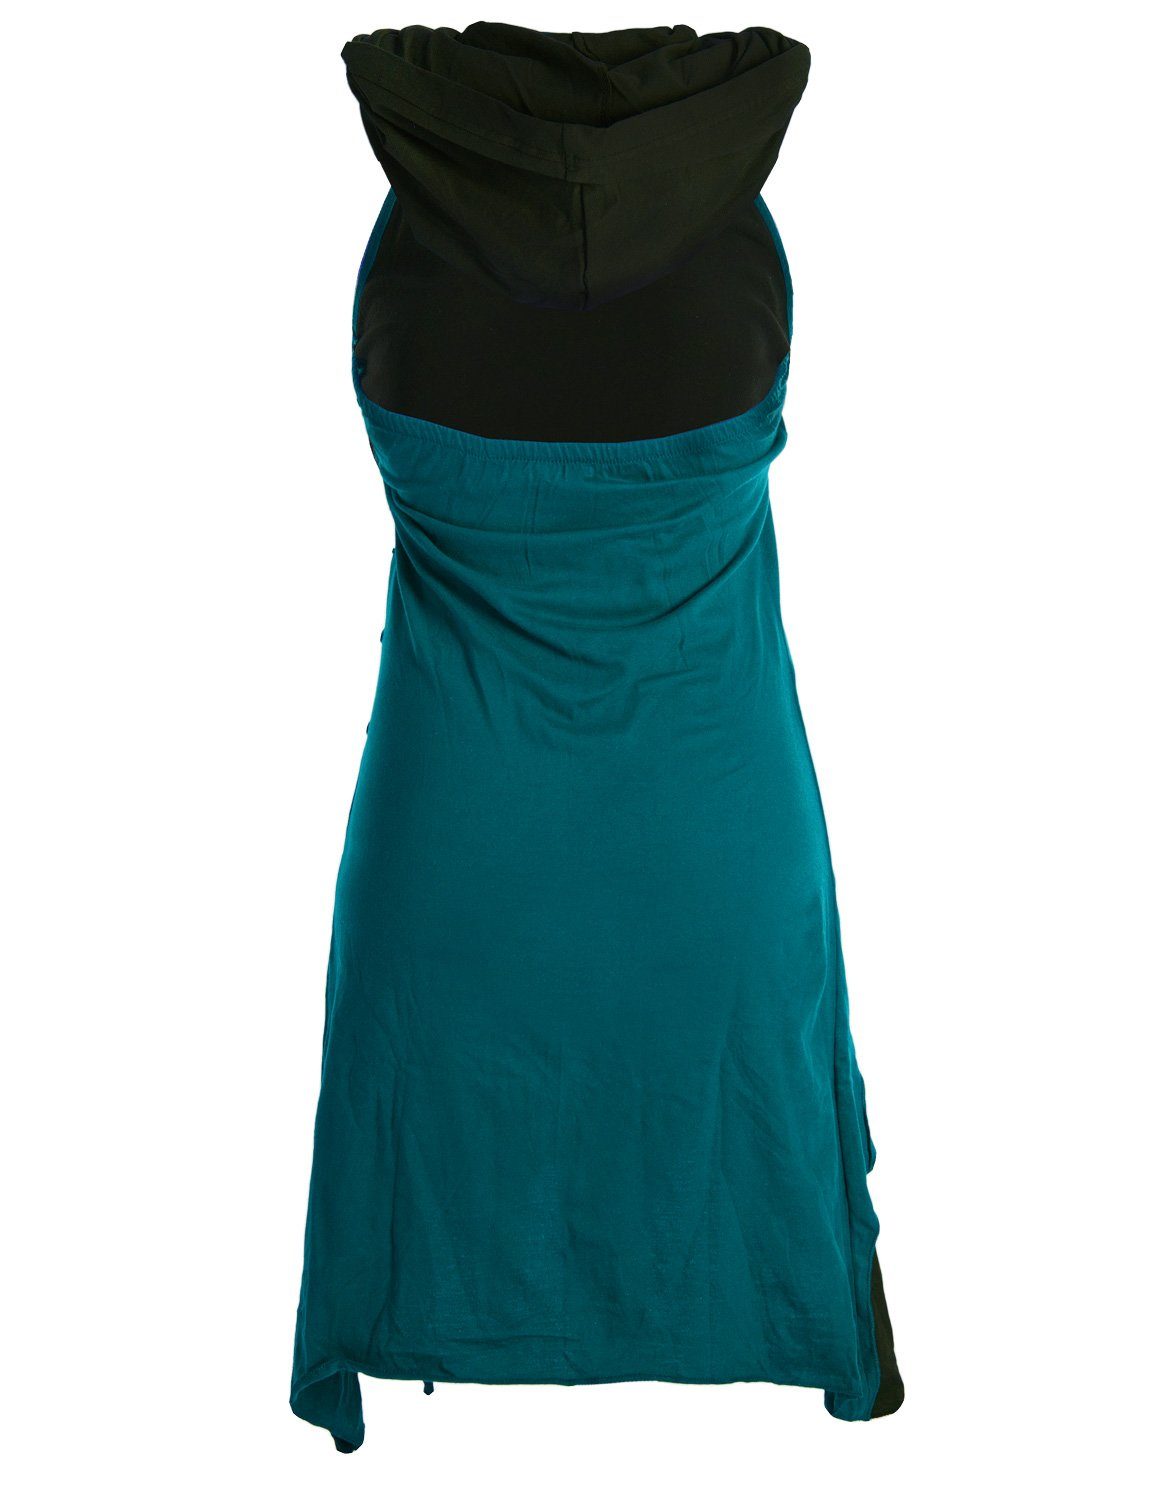 Lagenlook Zipfel-Neckholder türkis aus Kleid Baumwolle Vishes Neckholderkleid Elfen Kapuzen Goa, Hippie,